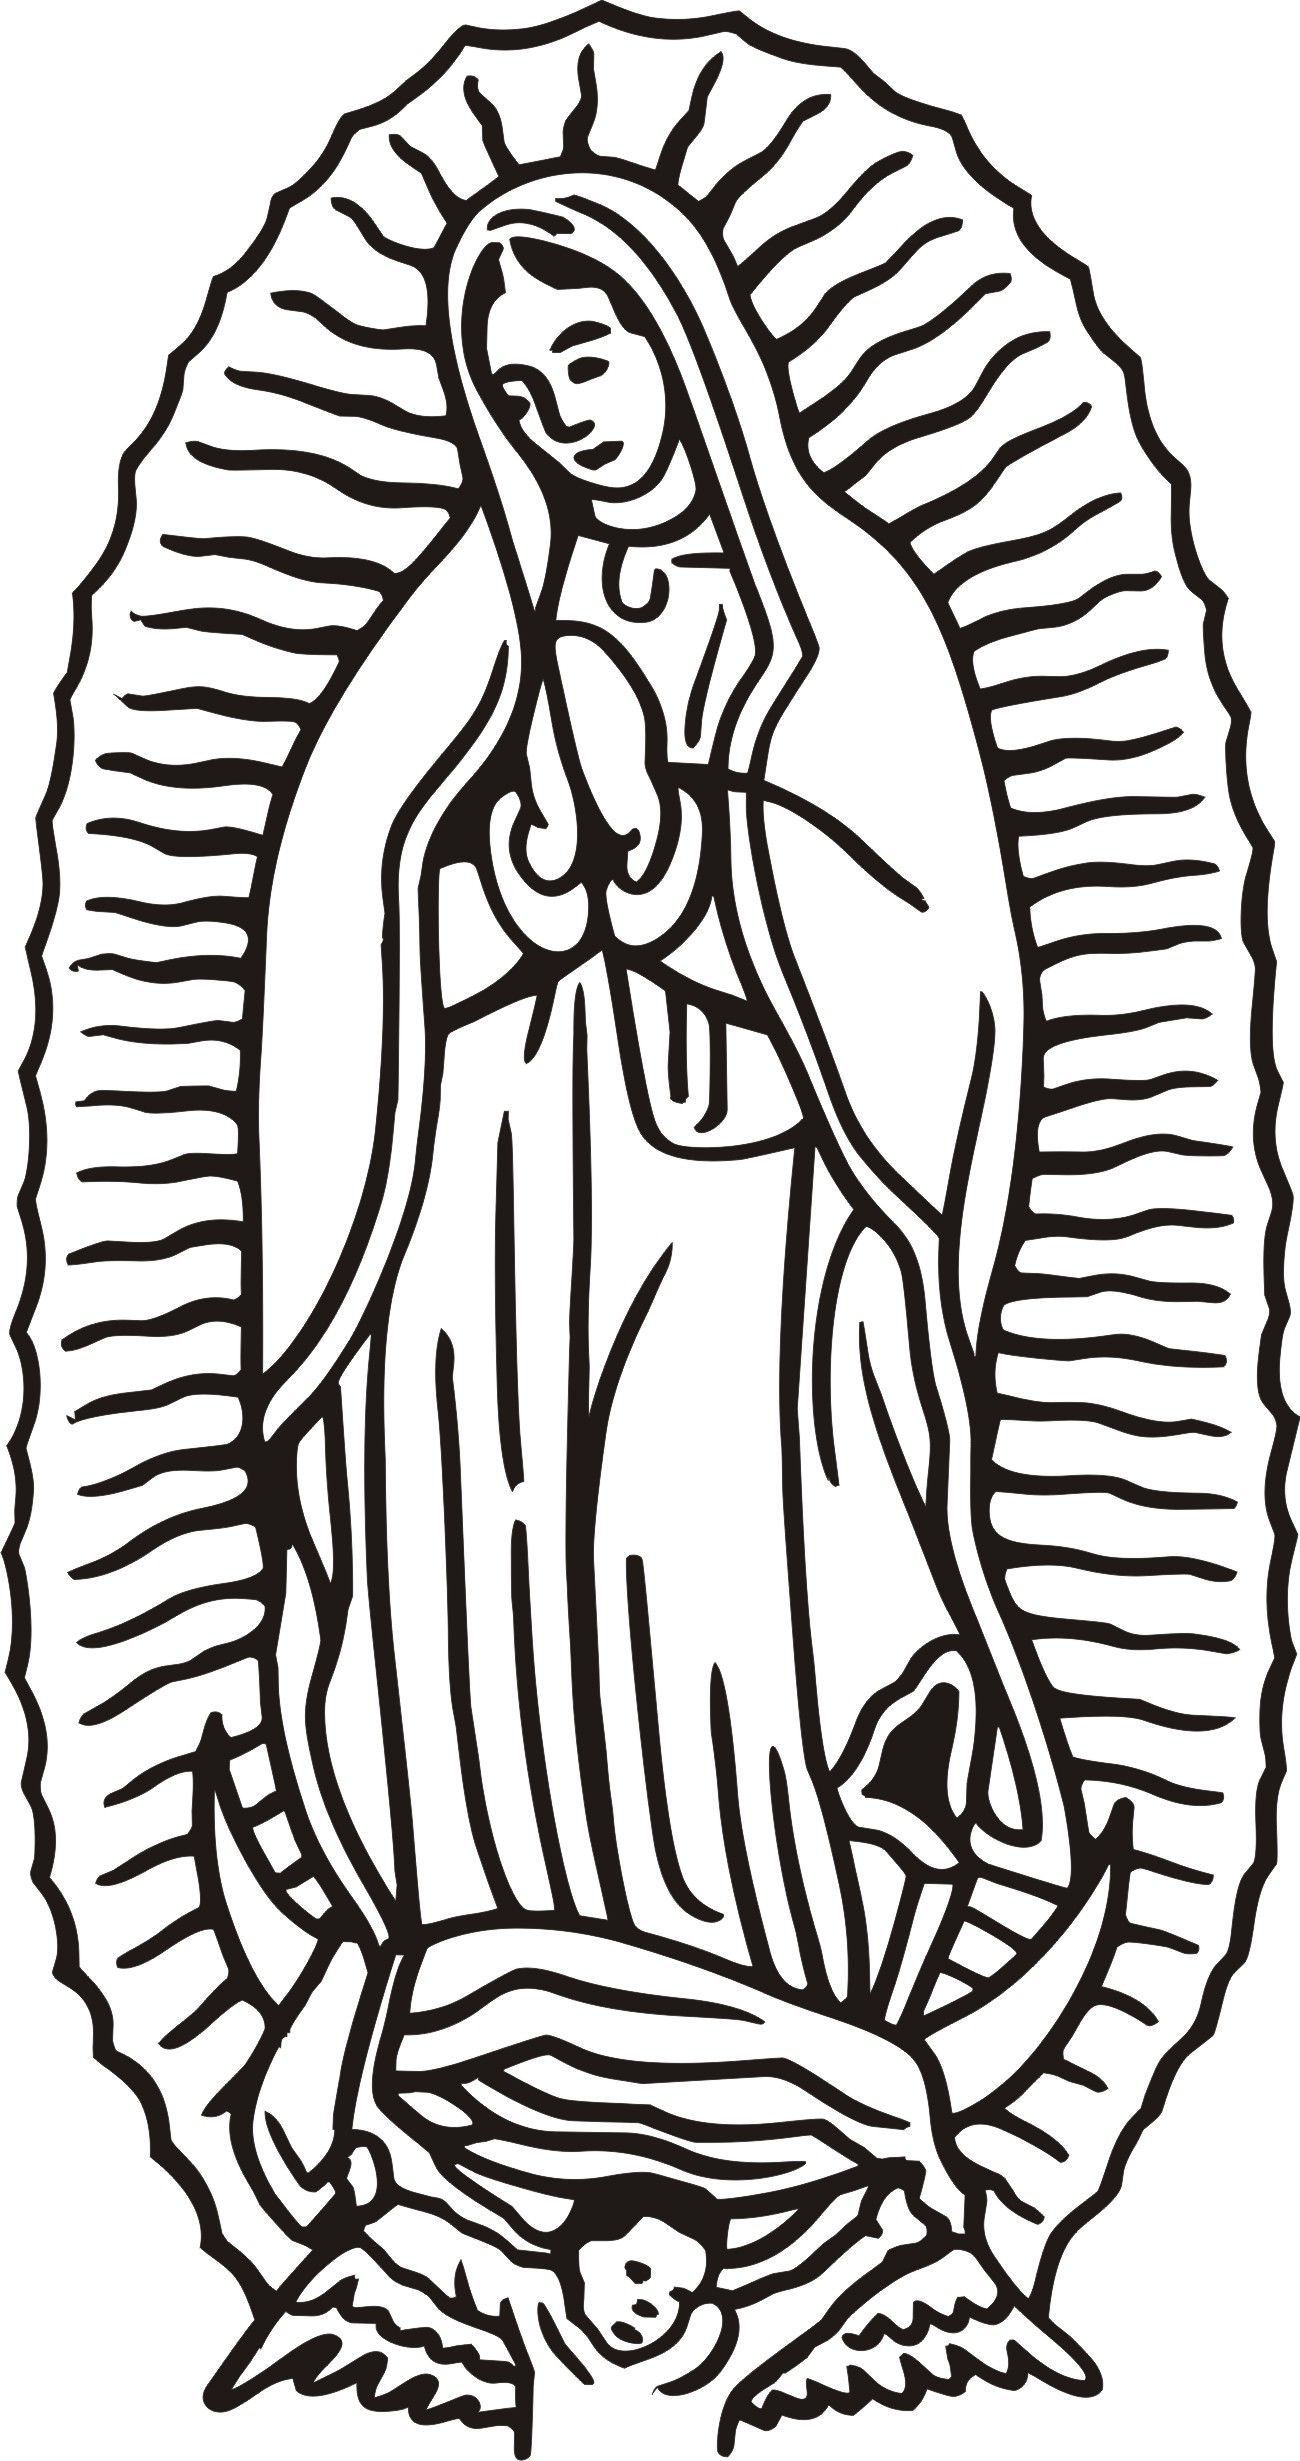 La Virgen De Guadalupe Coloring Pages - AZ Coloring Pages